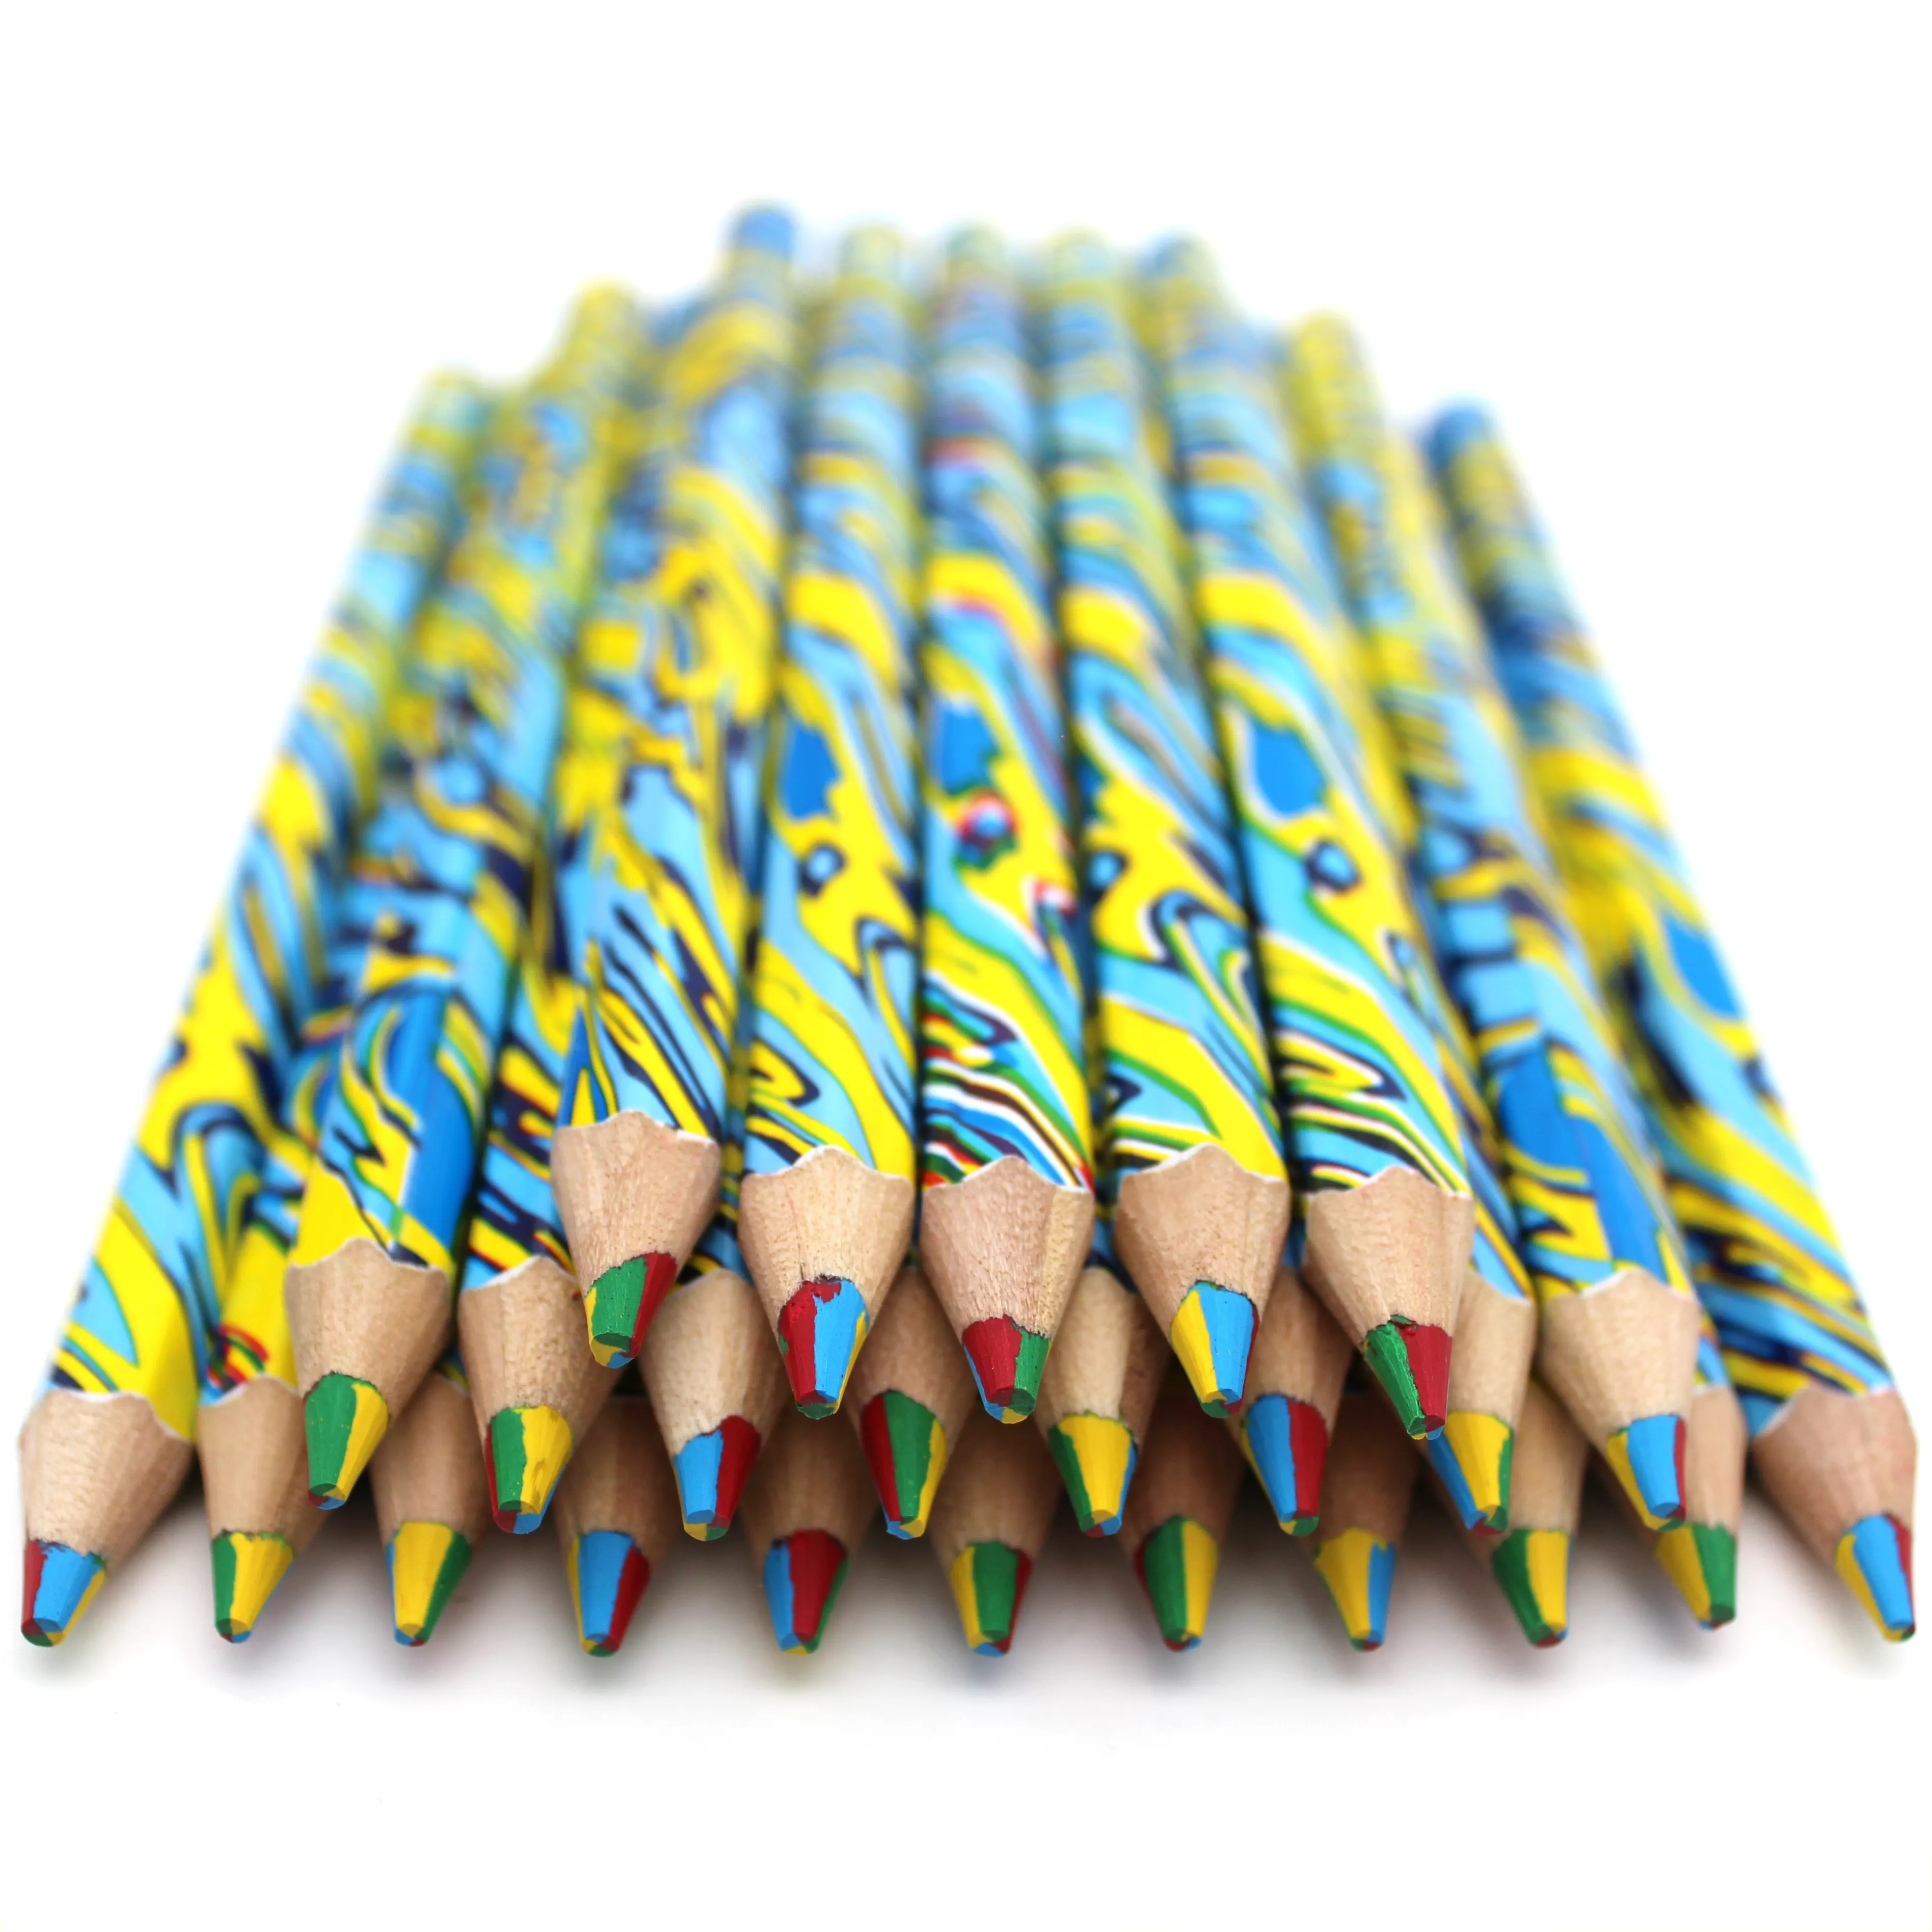 혼합 리드 점보 크기 컬러 연필 세트 4 색 1 리드 어린이를위한 멀티 컬러 매직 연필